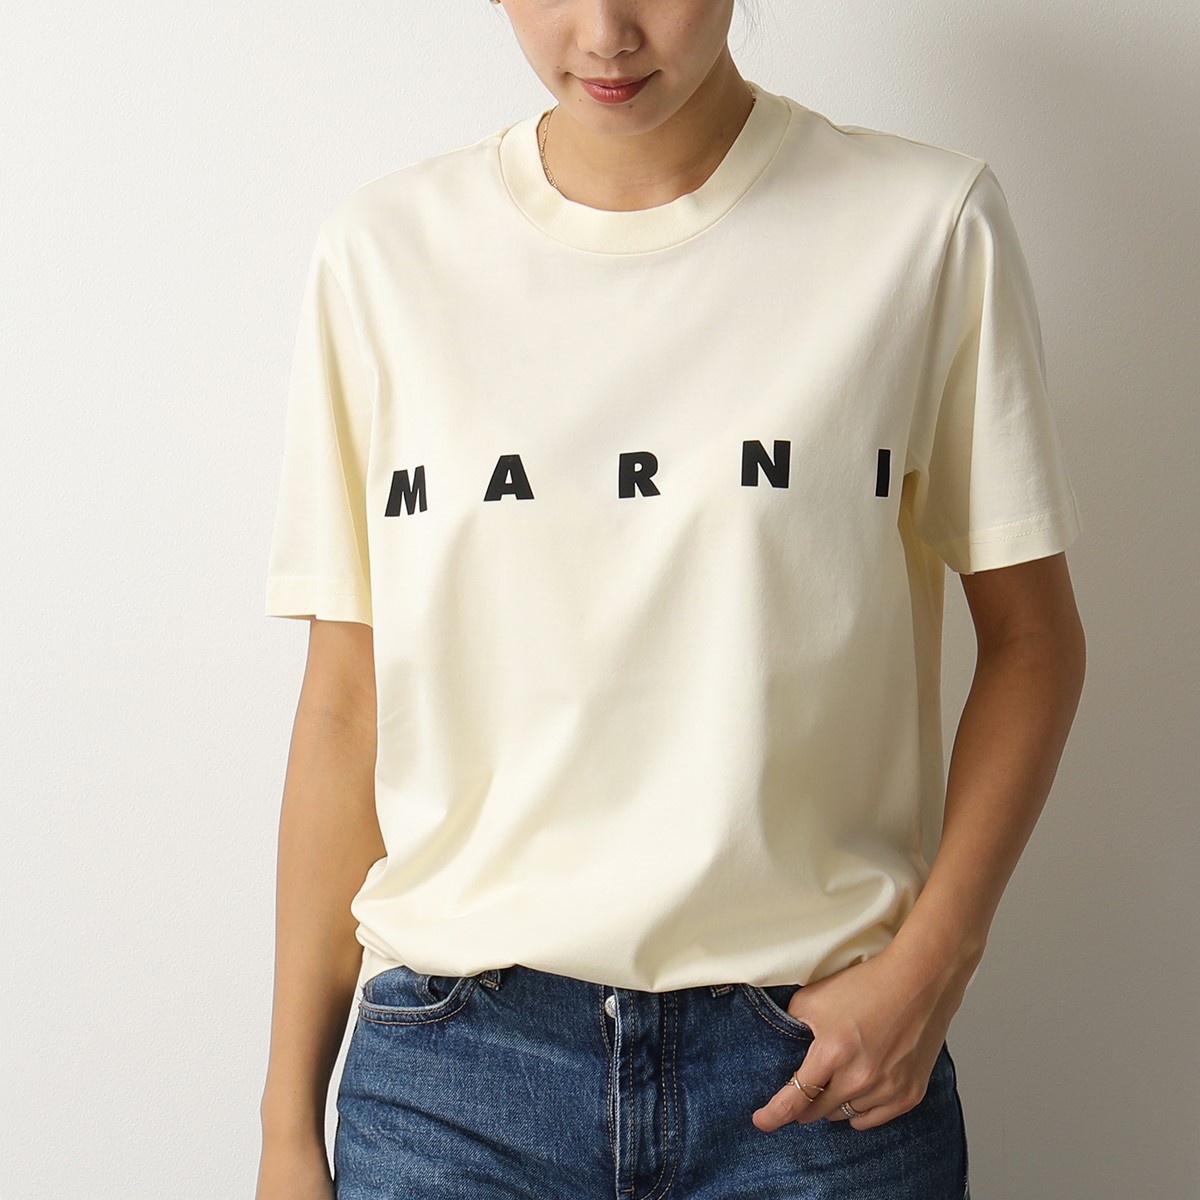 MARNI マルニ ロゴTシャツ HUMU0170P0 S22763 白 半袖Tシャツ メンズ